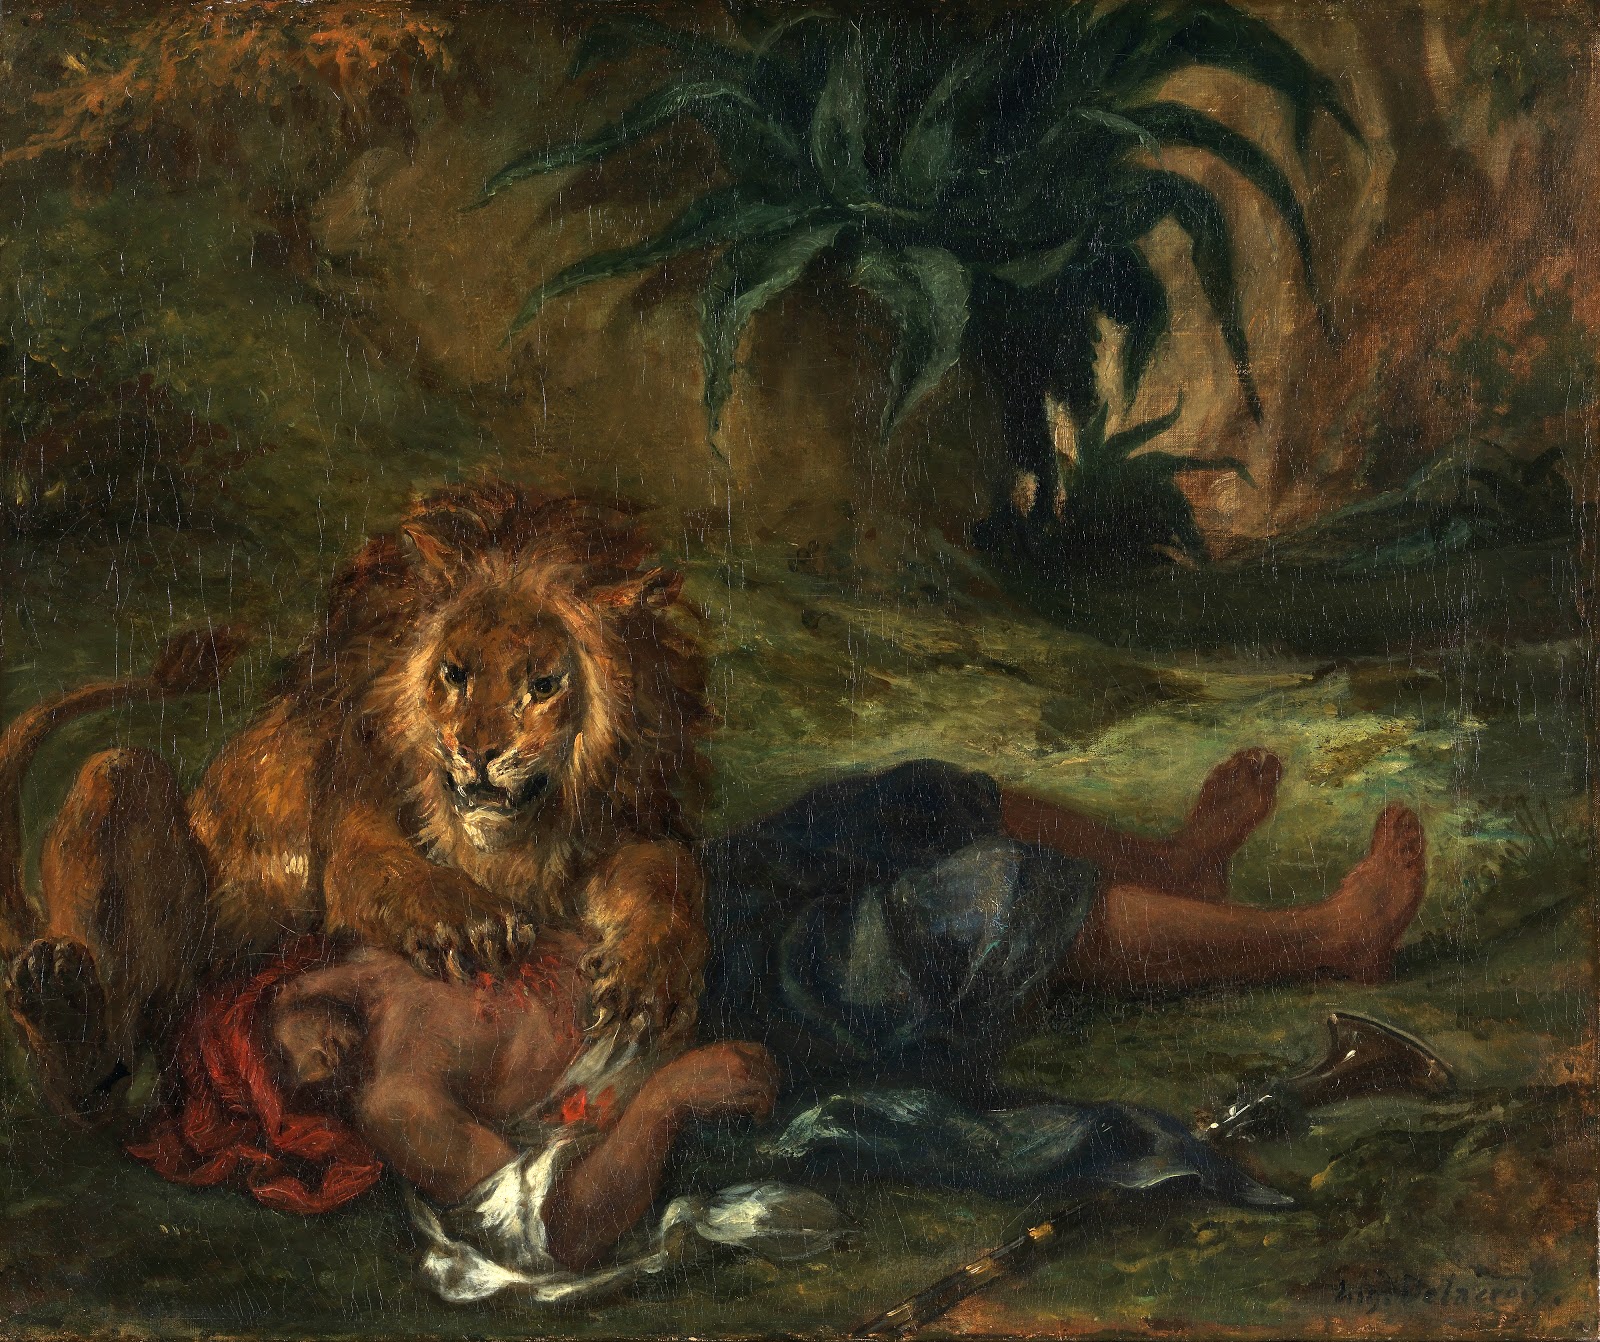 Eugene+Delacroix-1798-1863 (166).jpg